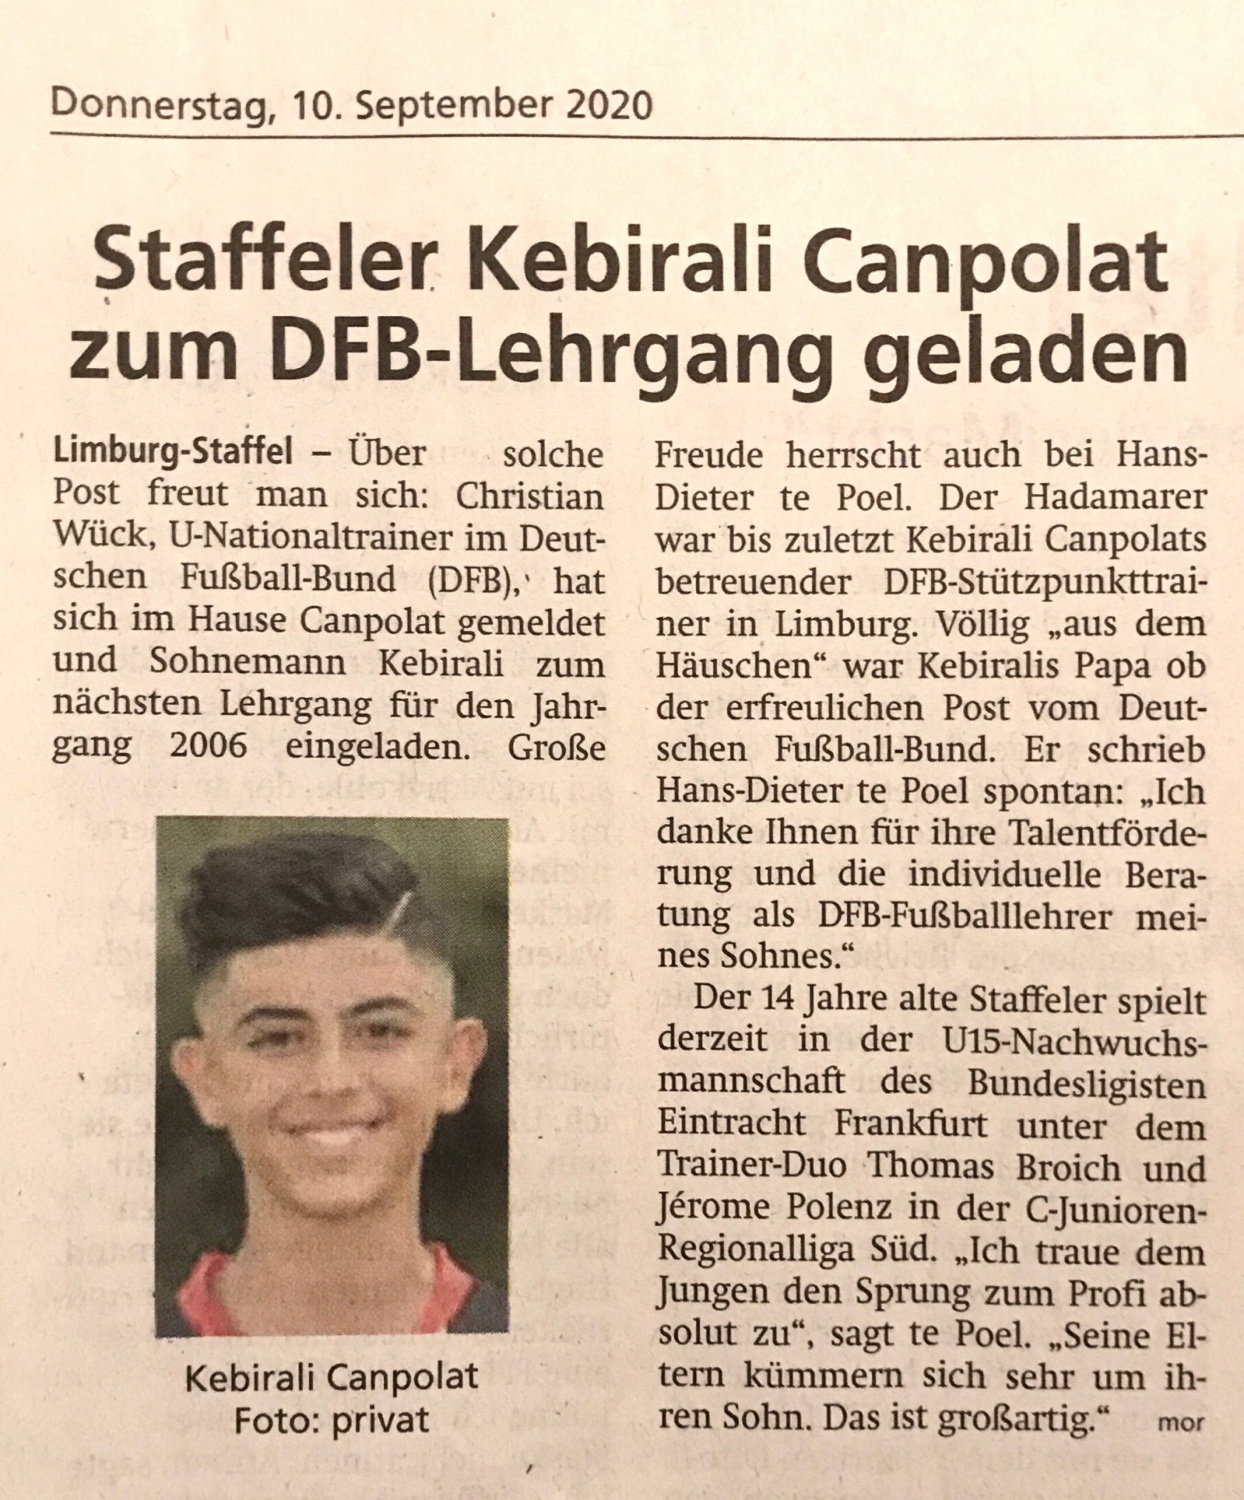 Staffeler Kebirali Canpolat zum DFB-Lehrgang geladen